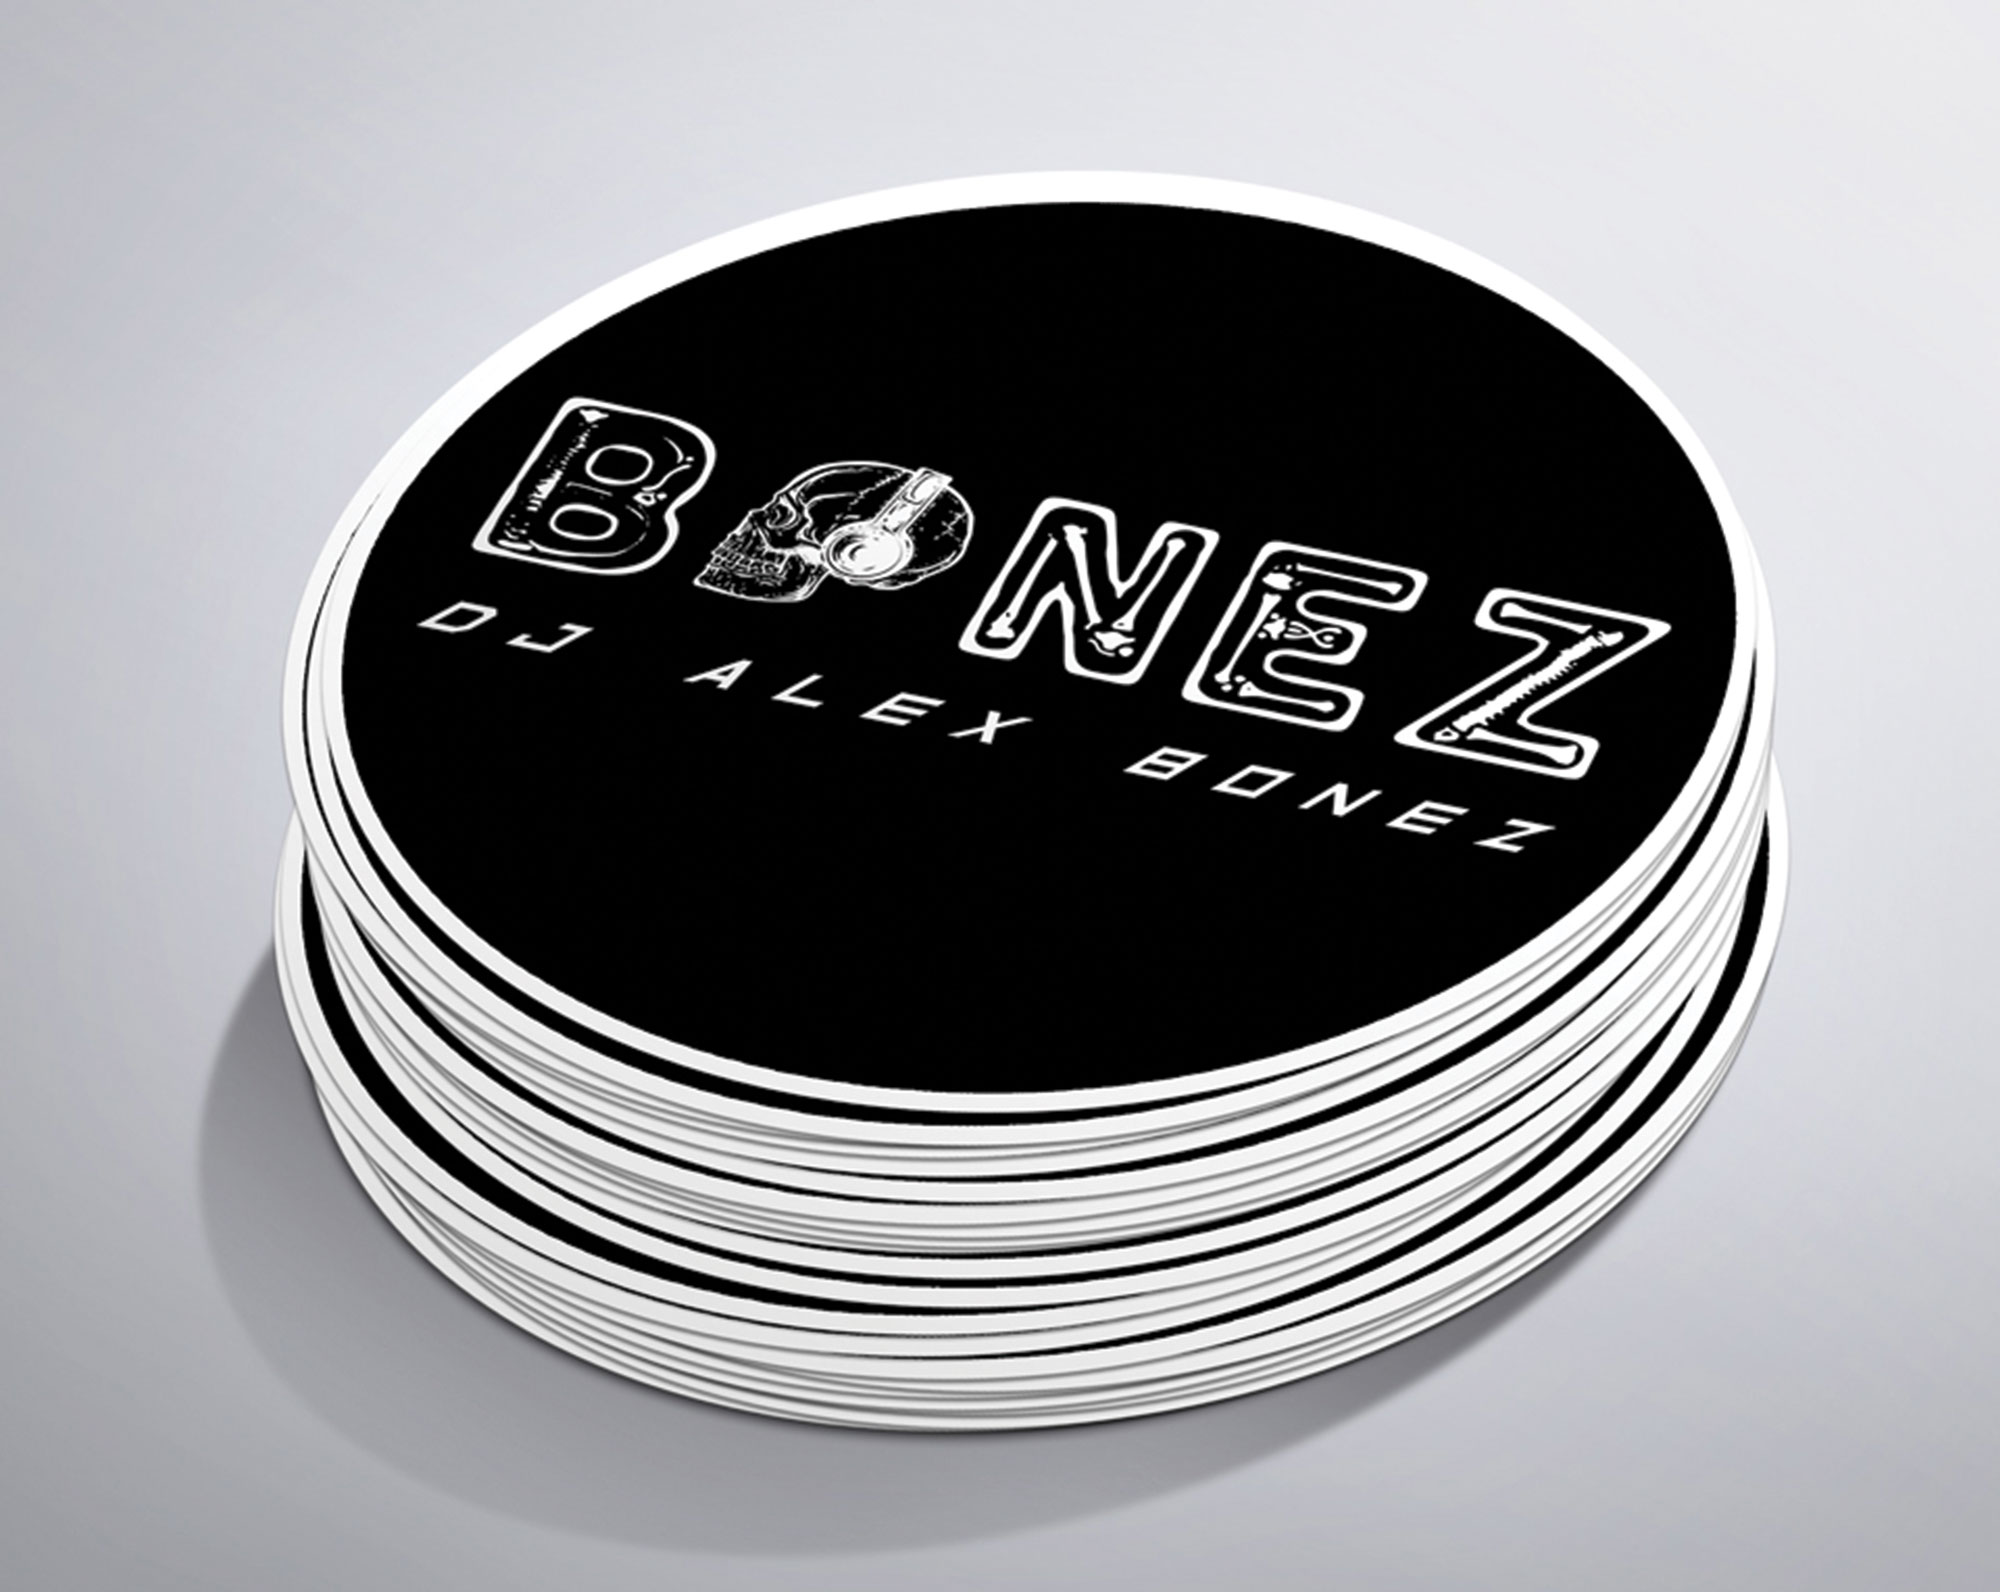 Bonez-sticker.jpg